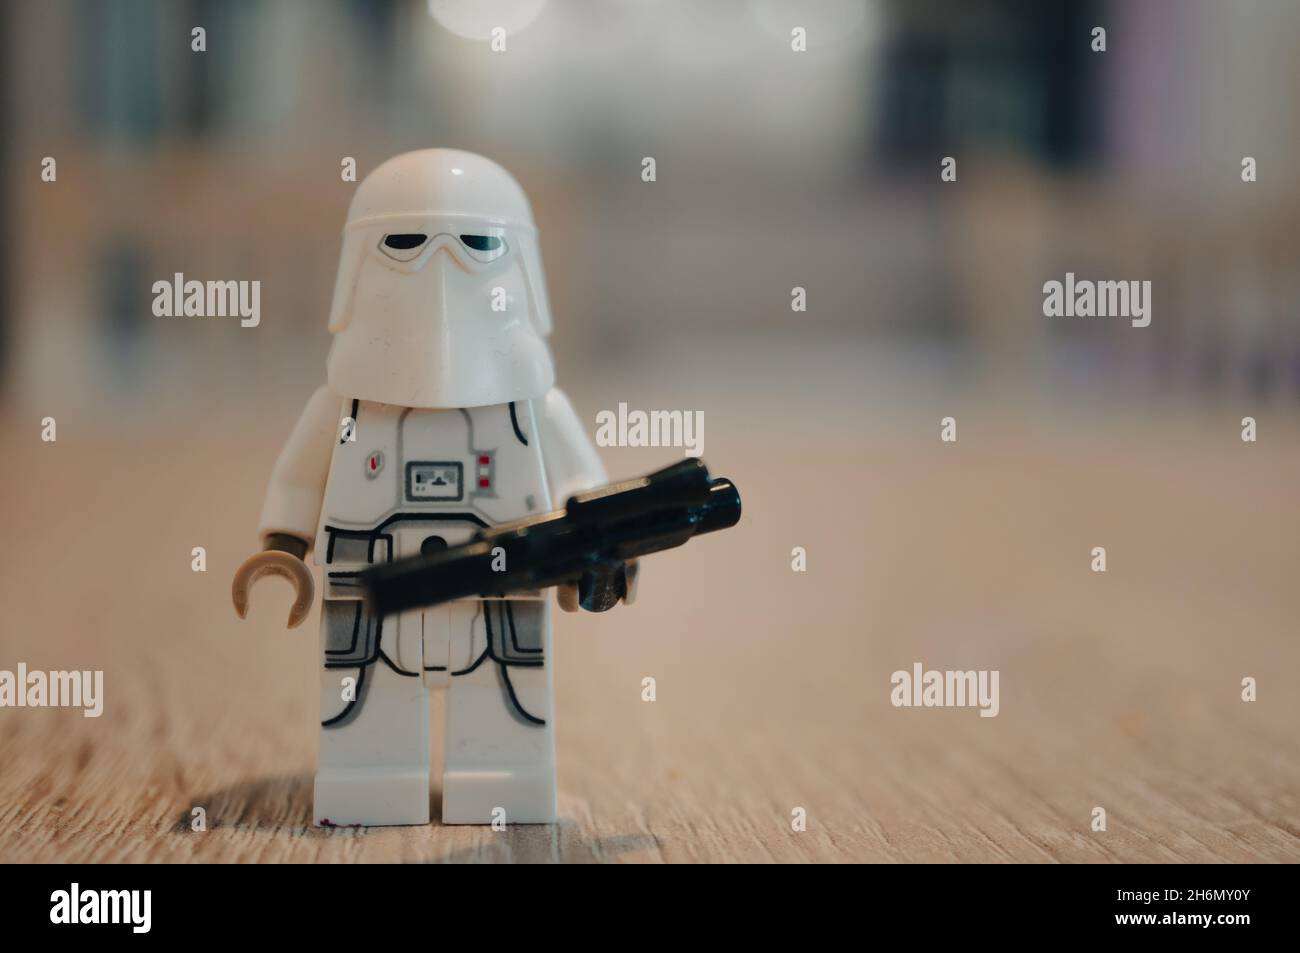 POZNAN, POLONIA - 17 de octubre de 2021: Una figura de la nieve del trooper  de Lego Star Wars con un casco y sosteniendo una pistola del laser, Poznan,  Polonia Fotografía de stock - Alamy